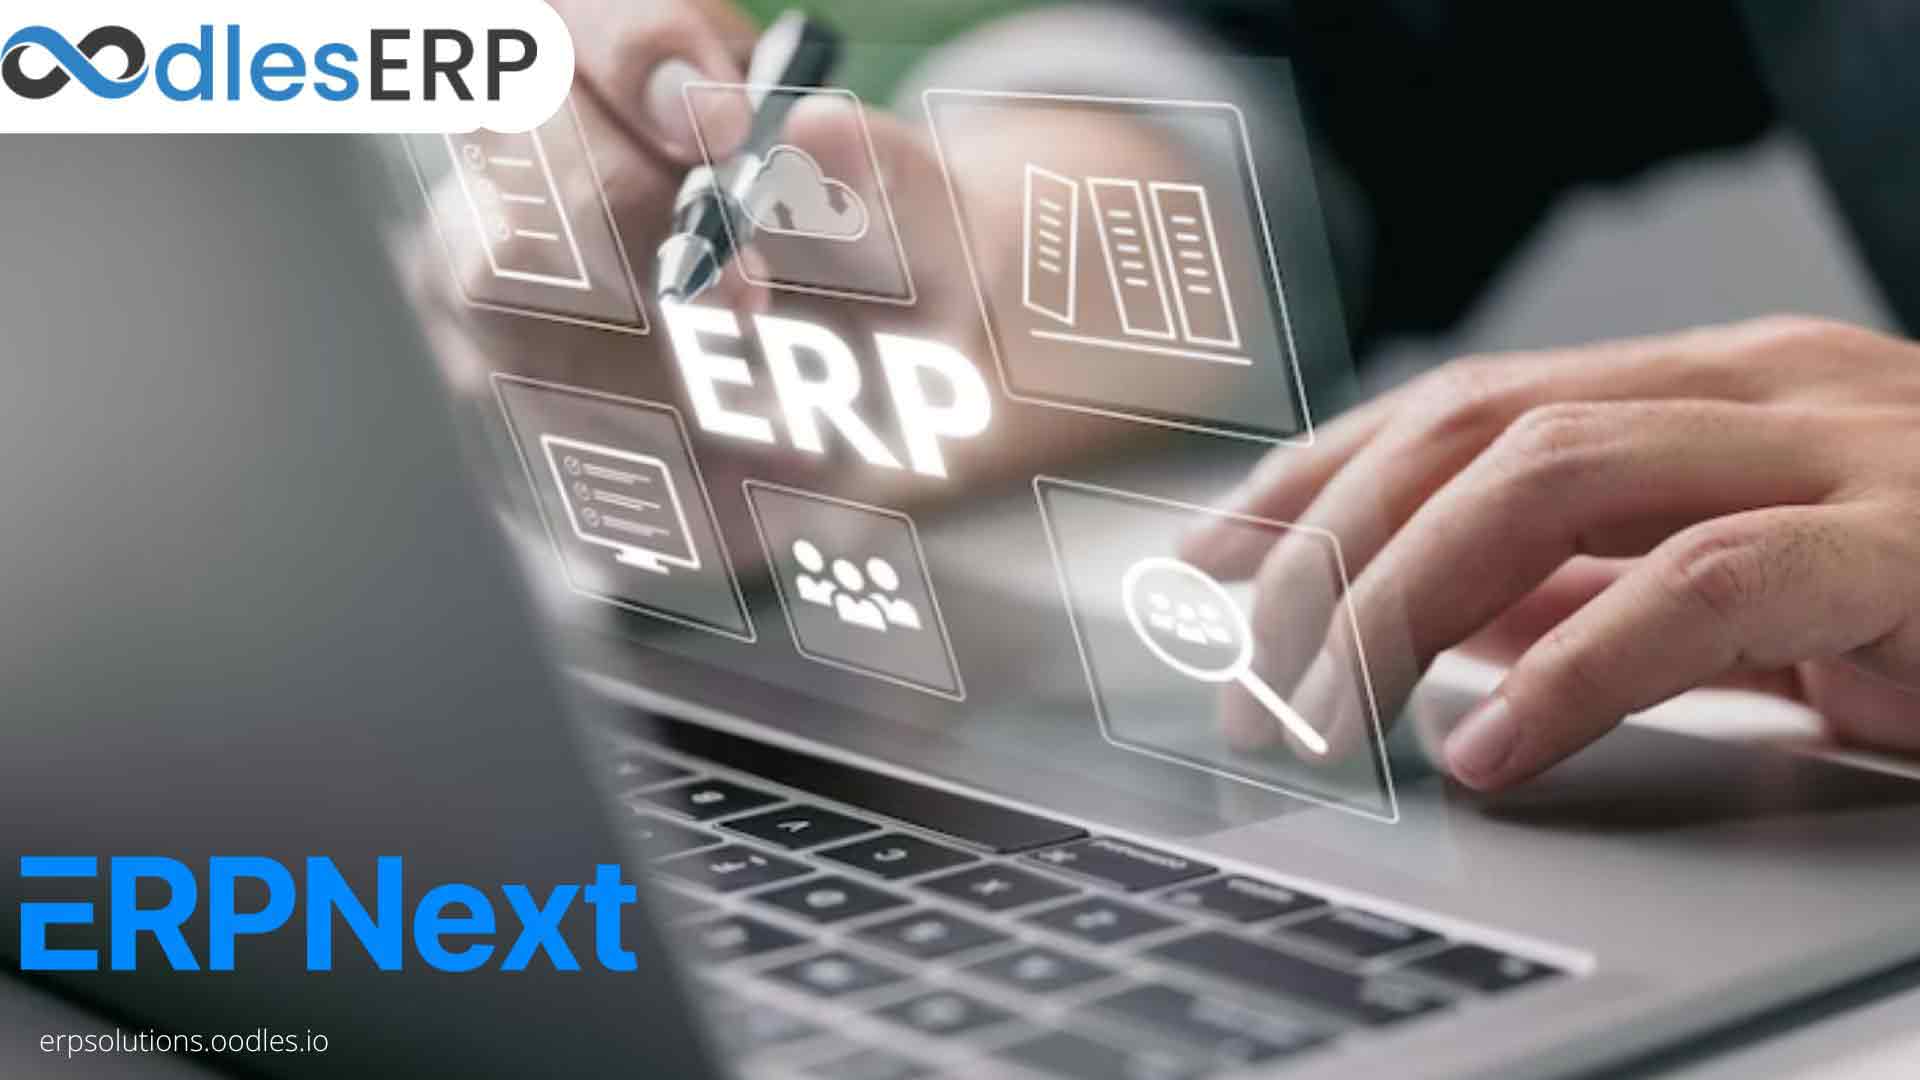 ERPNext Web Development For Customer Service Management